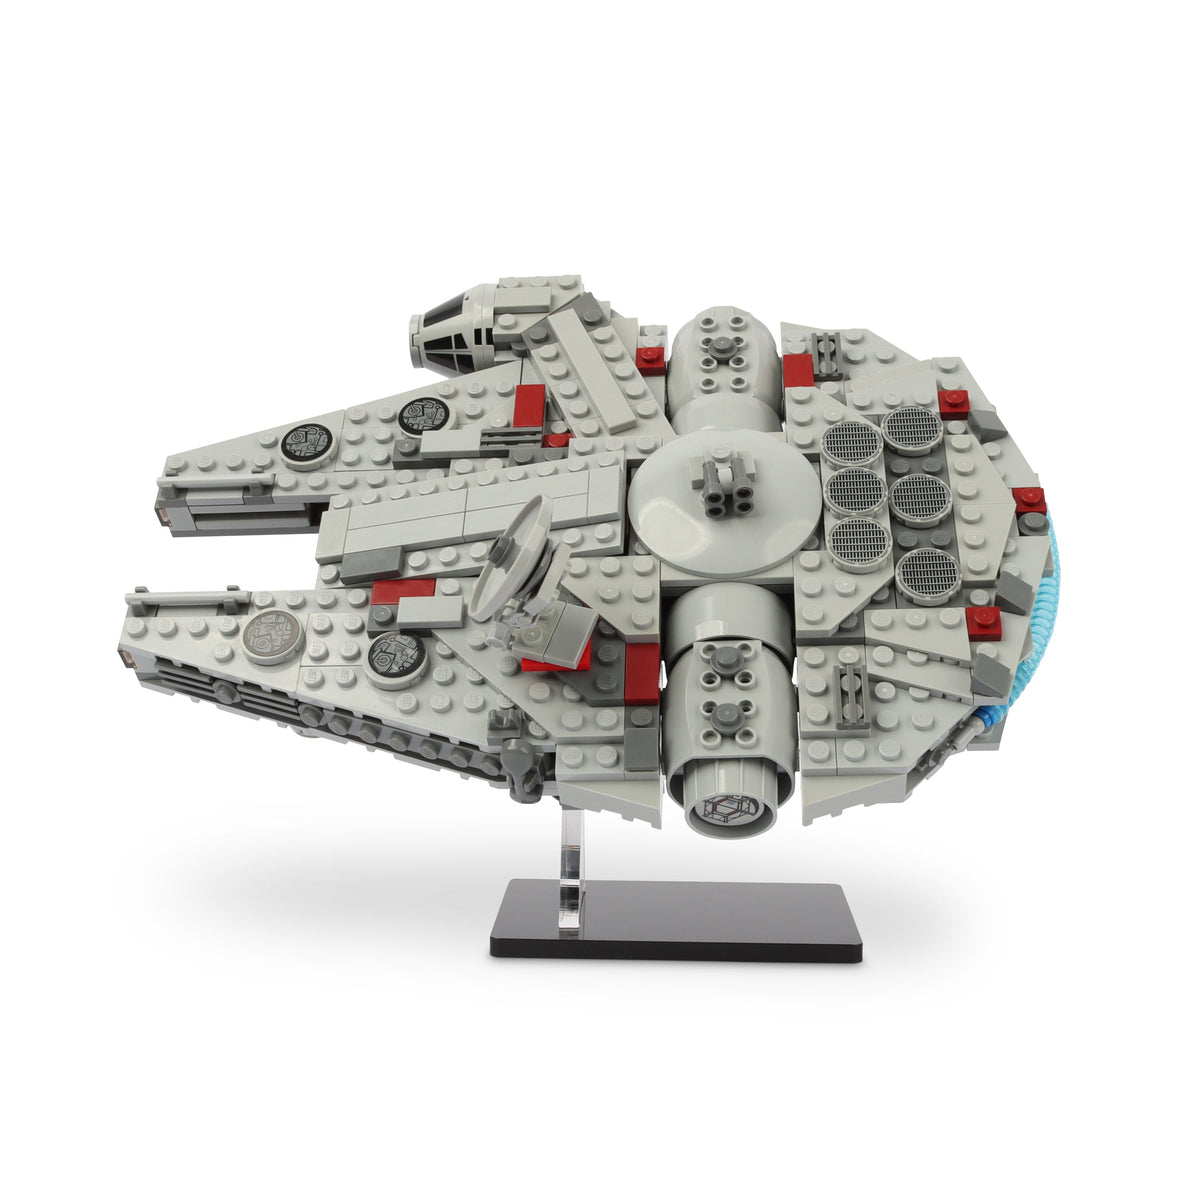 LEGO 7778 Midi-scale Millennium Falcon Display Stand